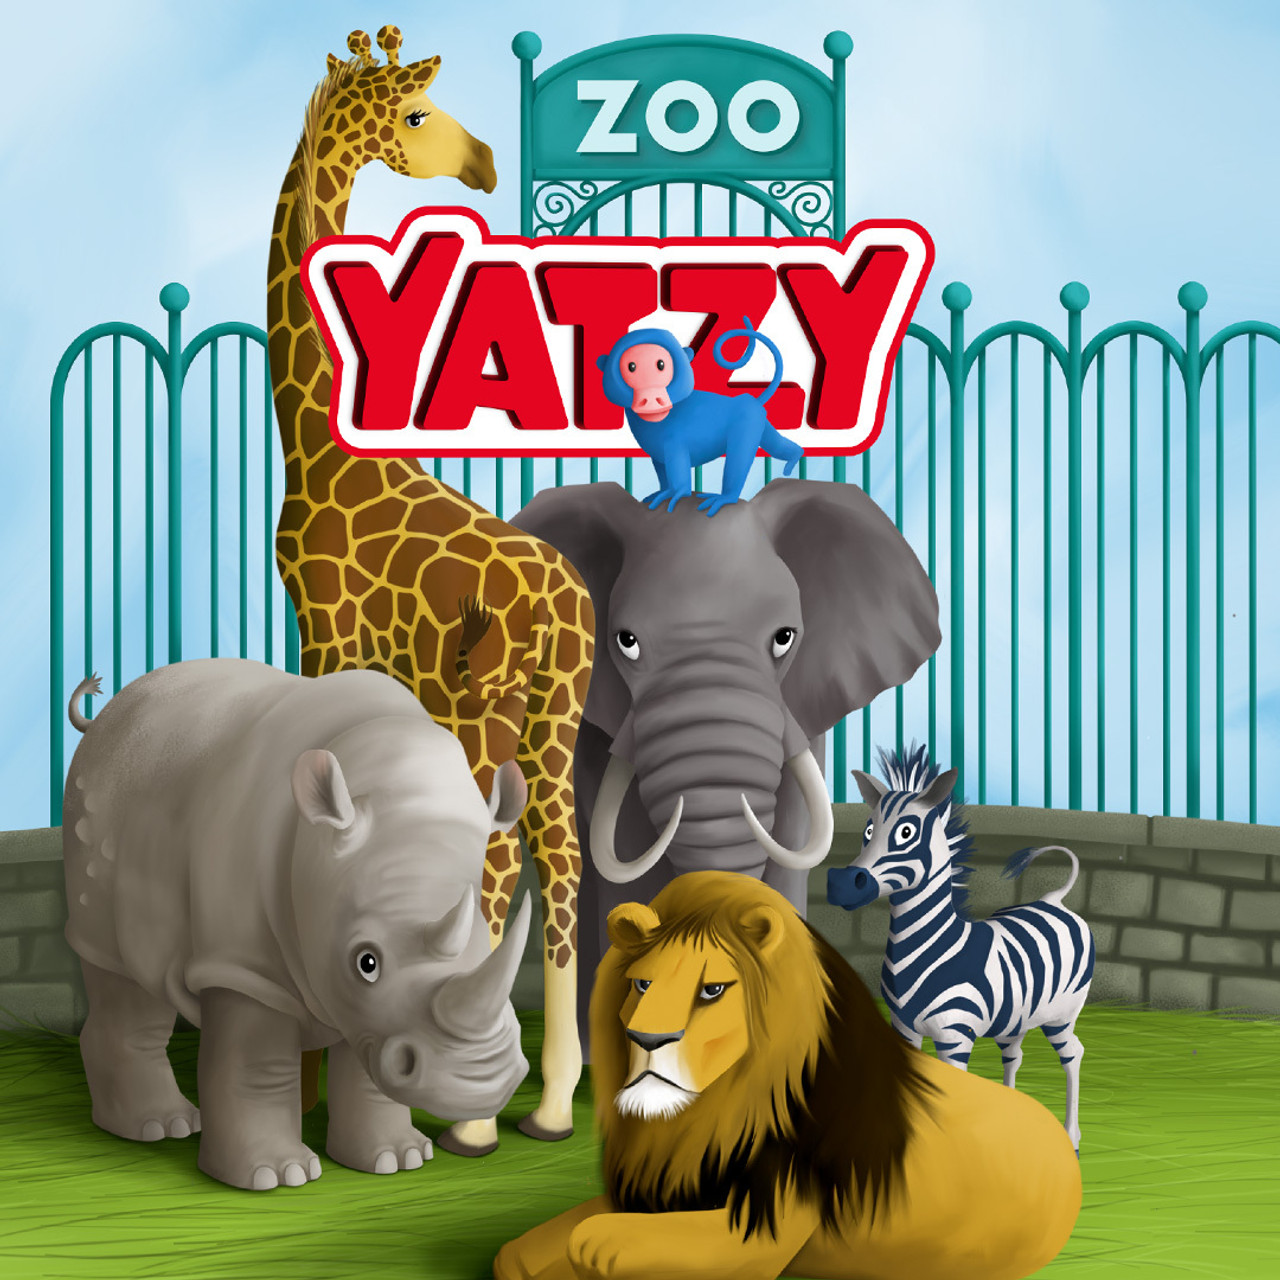 Zoo Yatzy 2